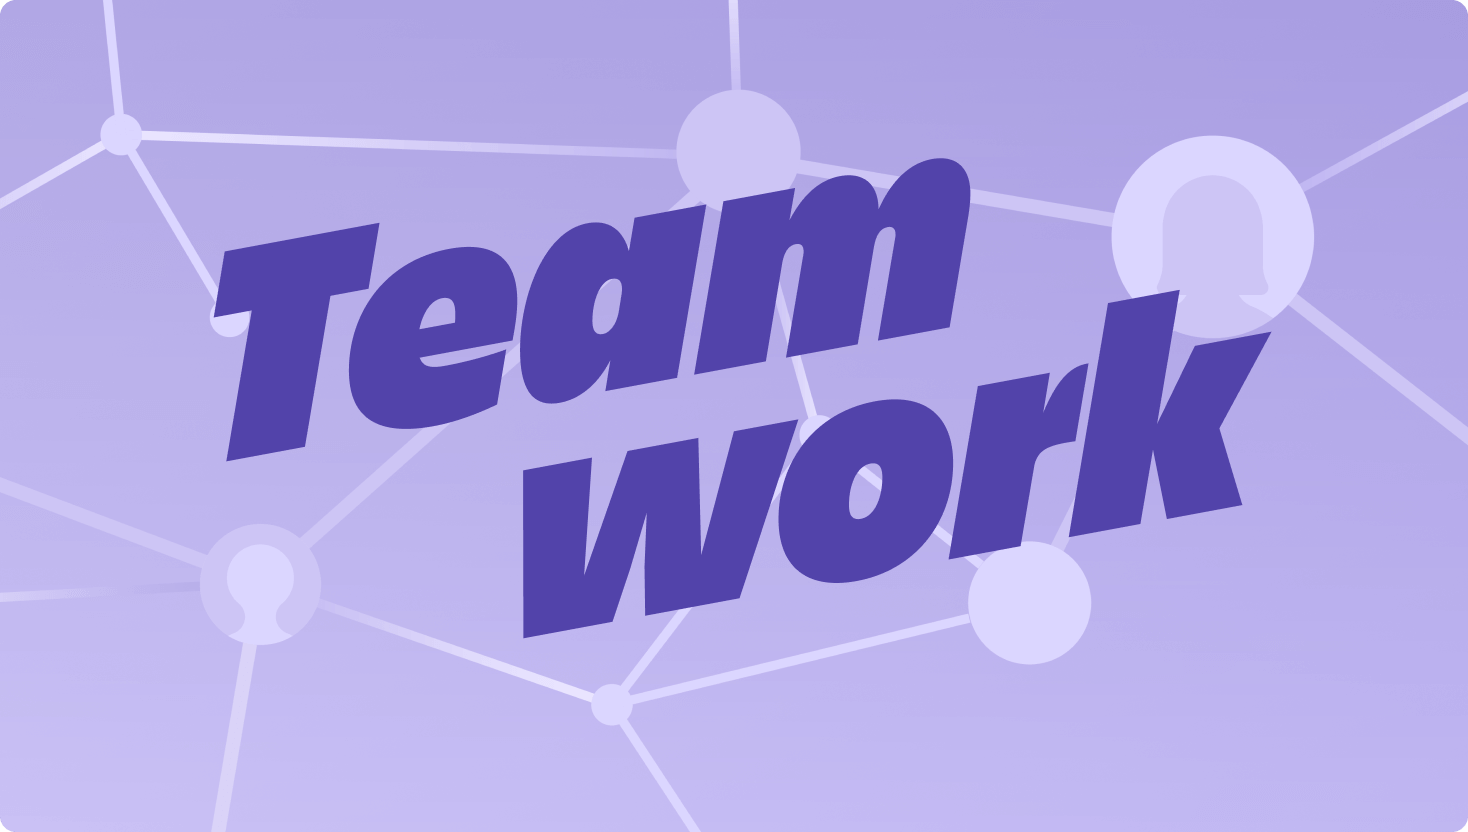 Imagen morada de nodos conectados en una red con la palabra "Teamwork" (Colaboración) en un lugar destacado